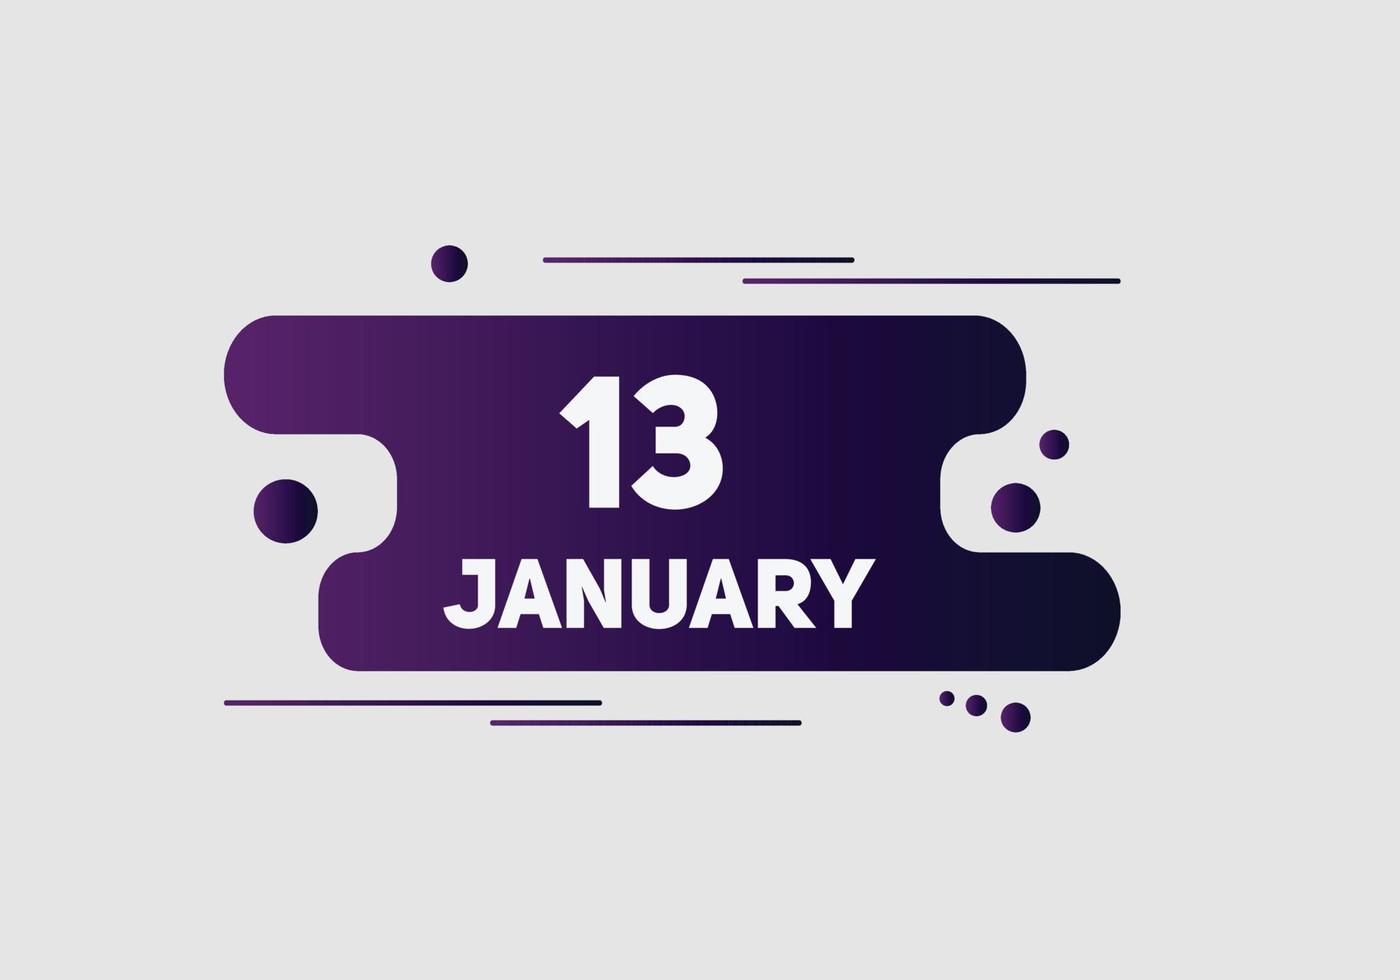 Recordatorio del calendario del 13 de enero. Plantilla de icono de calendario diario del 13 de enero. plantilla de diseño de icono de calendario 13 de enero. ilustración vectorial vector